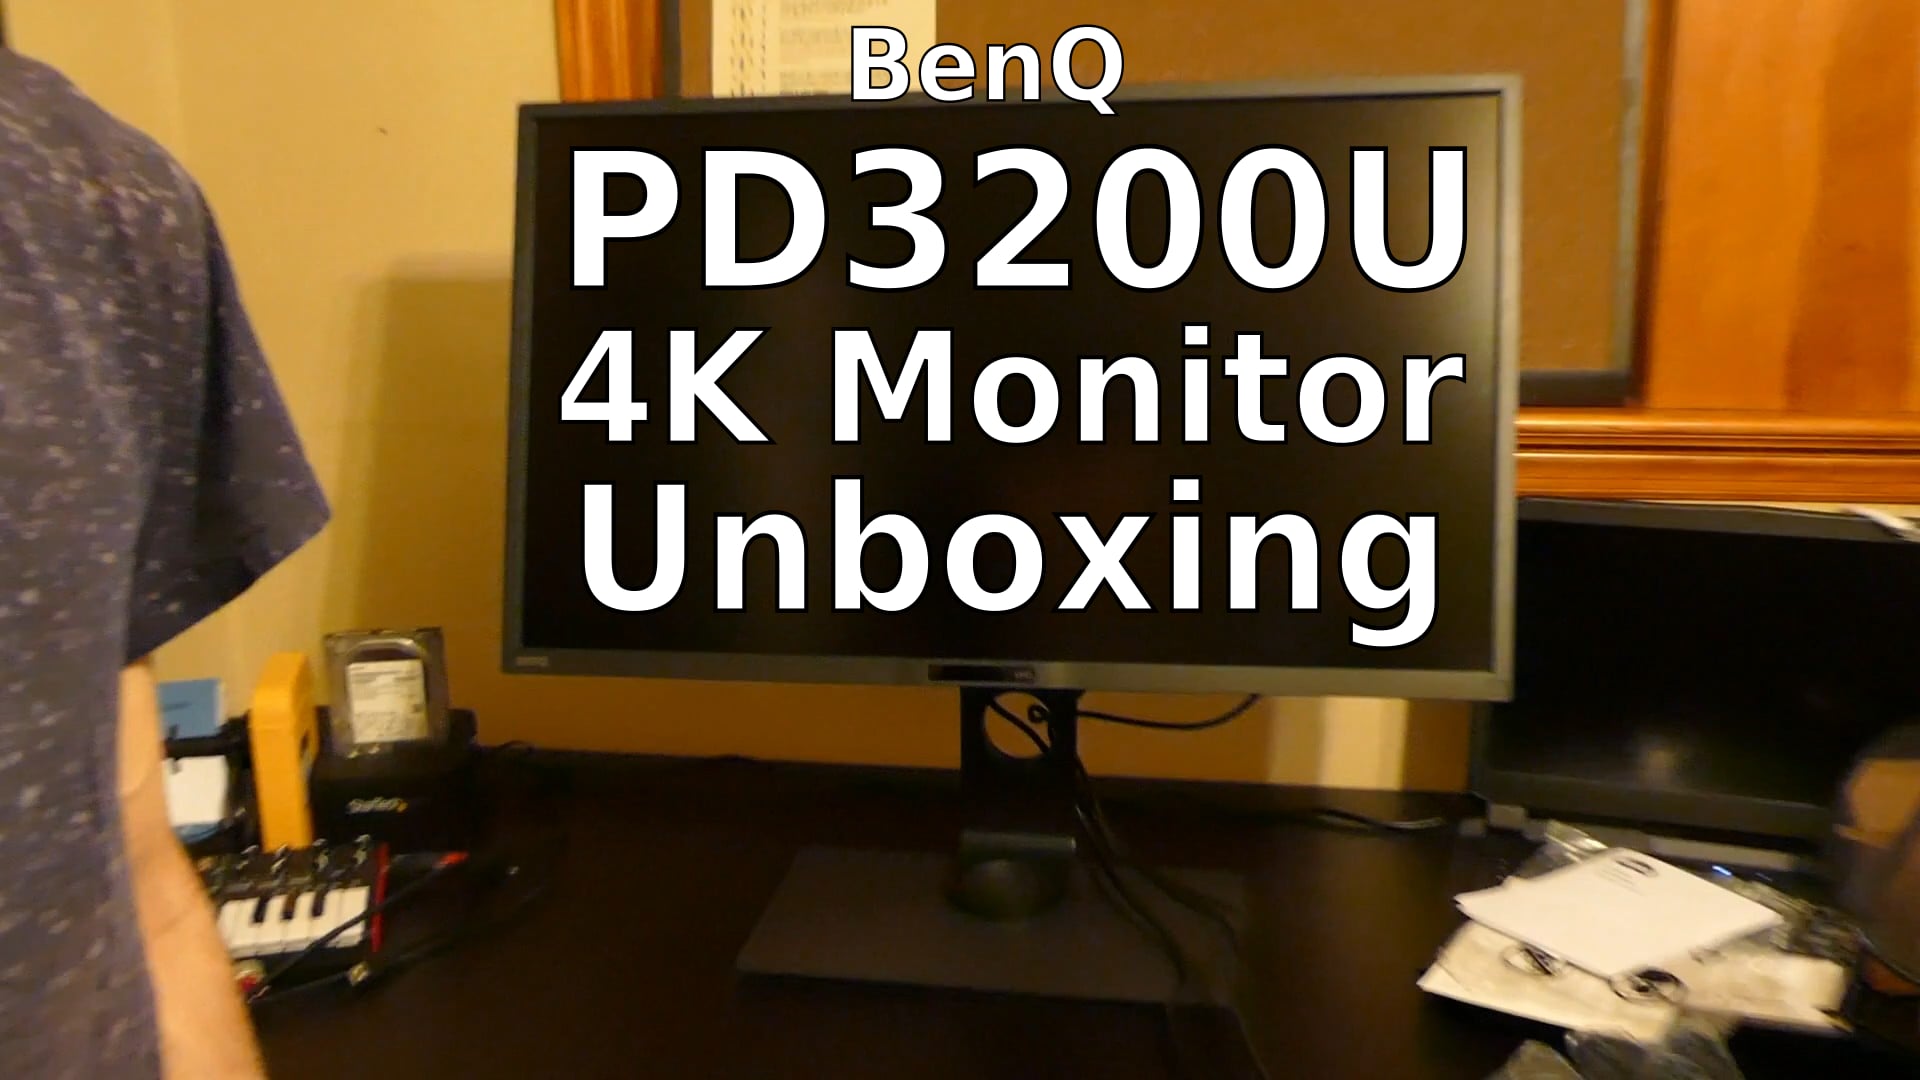 BenQ PD3200U 4K Monitor Unboxing